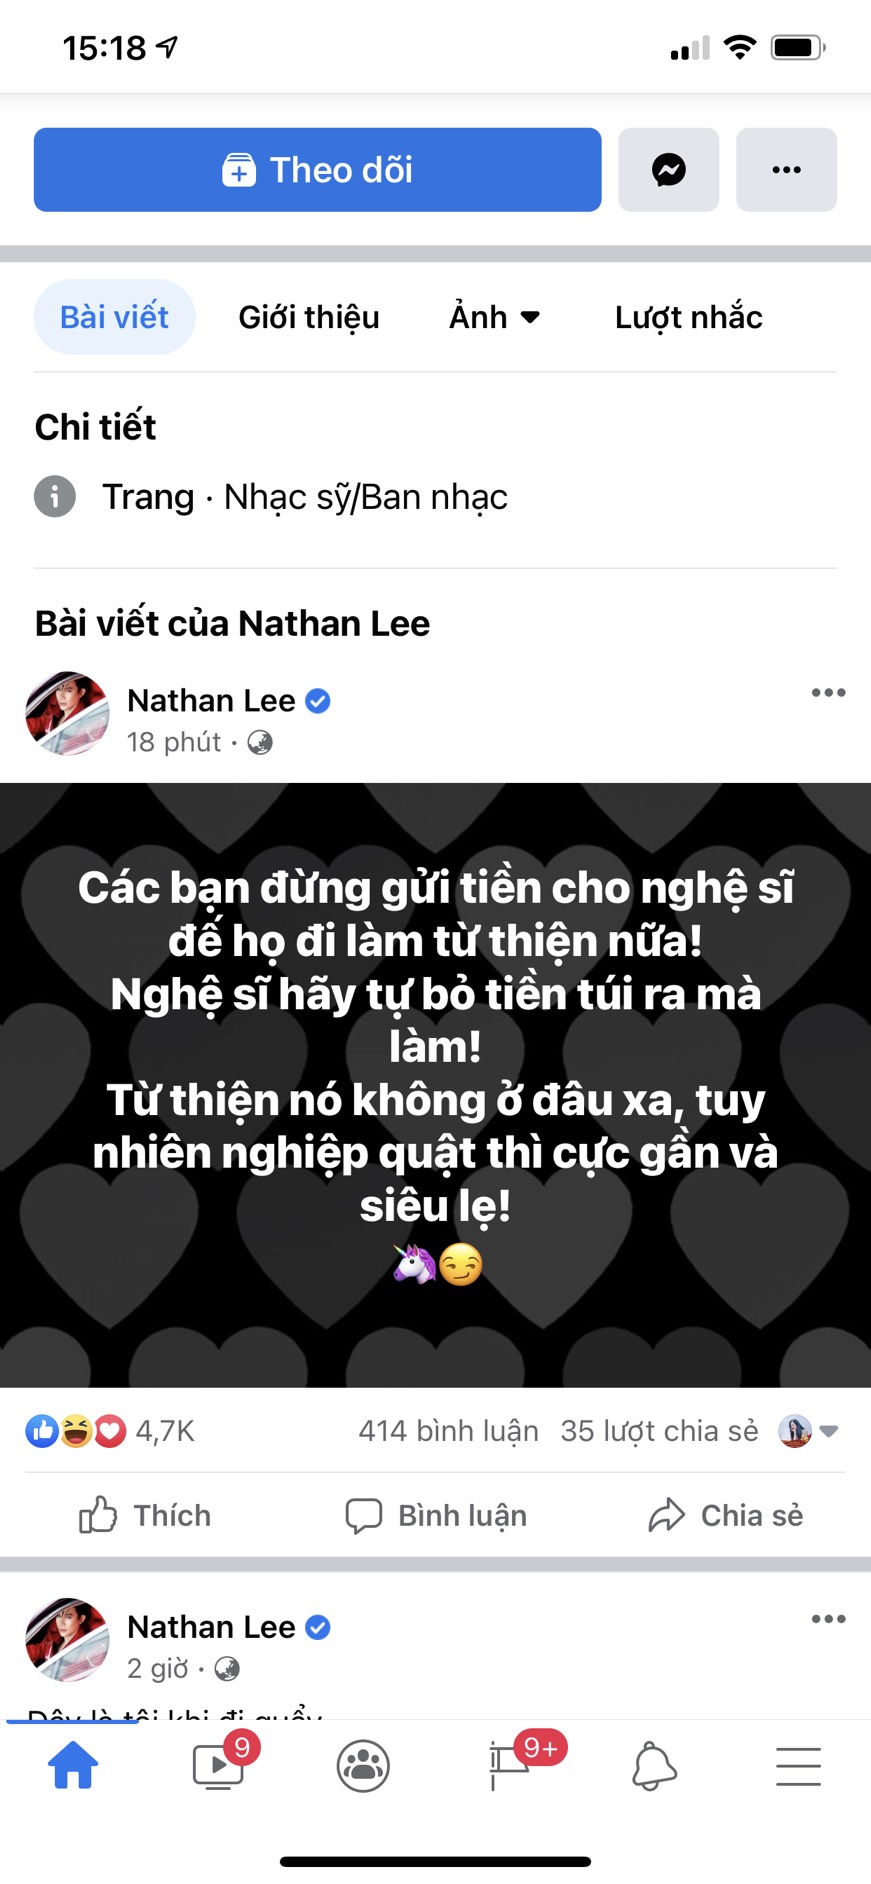 Nathan Lee không ủng hộ việc khán giả gửi tiền cho nghệ sĩ đi làm từ thiện